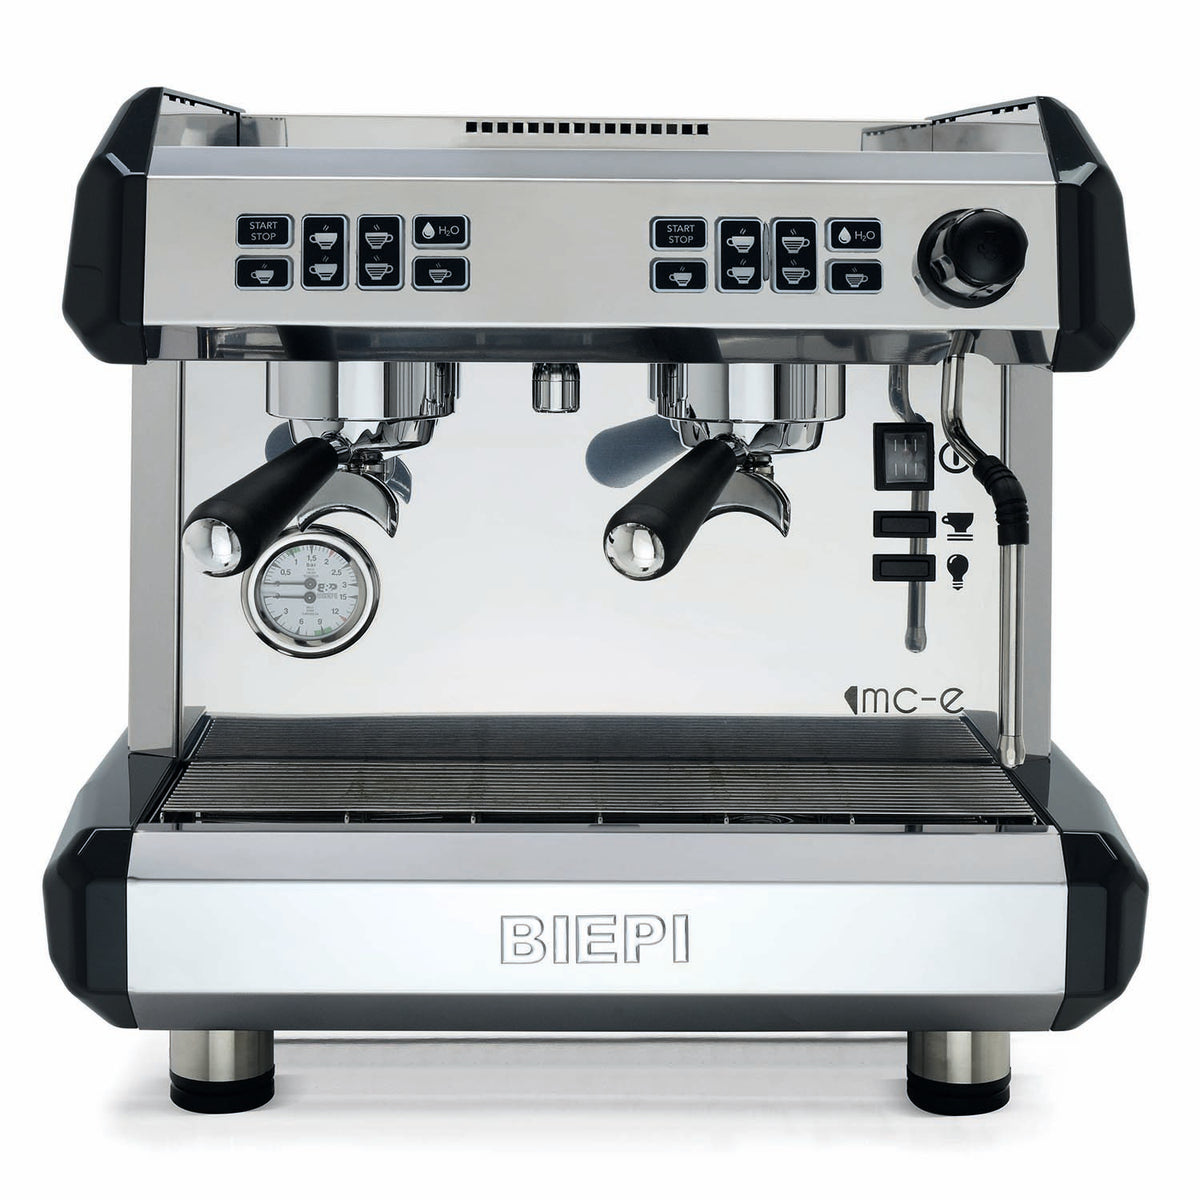 Biepi MC-E Espresso Coffee Machine - 1G / 2G & Compact